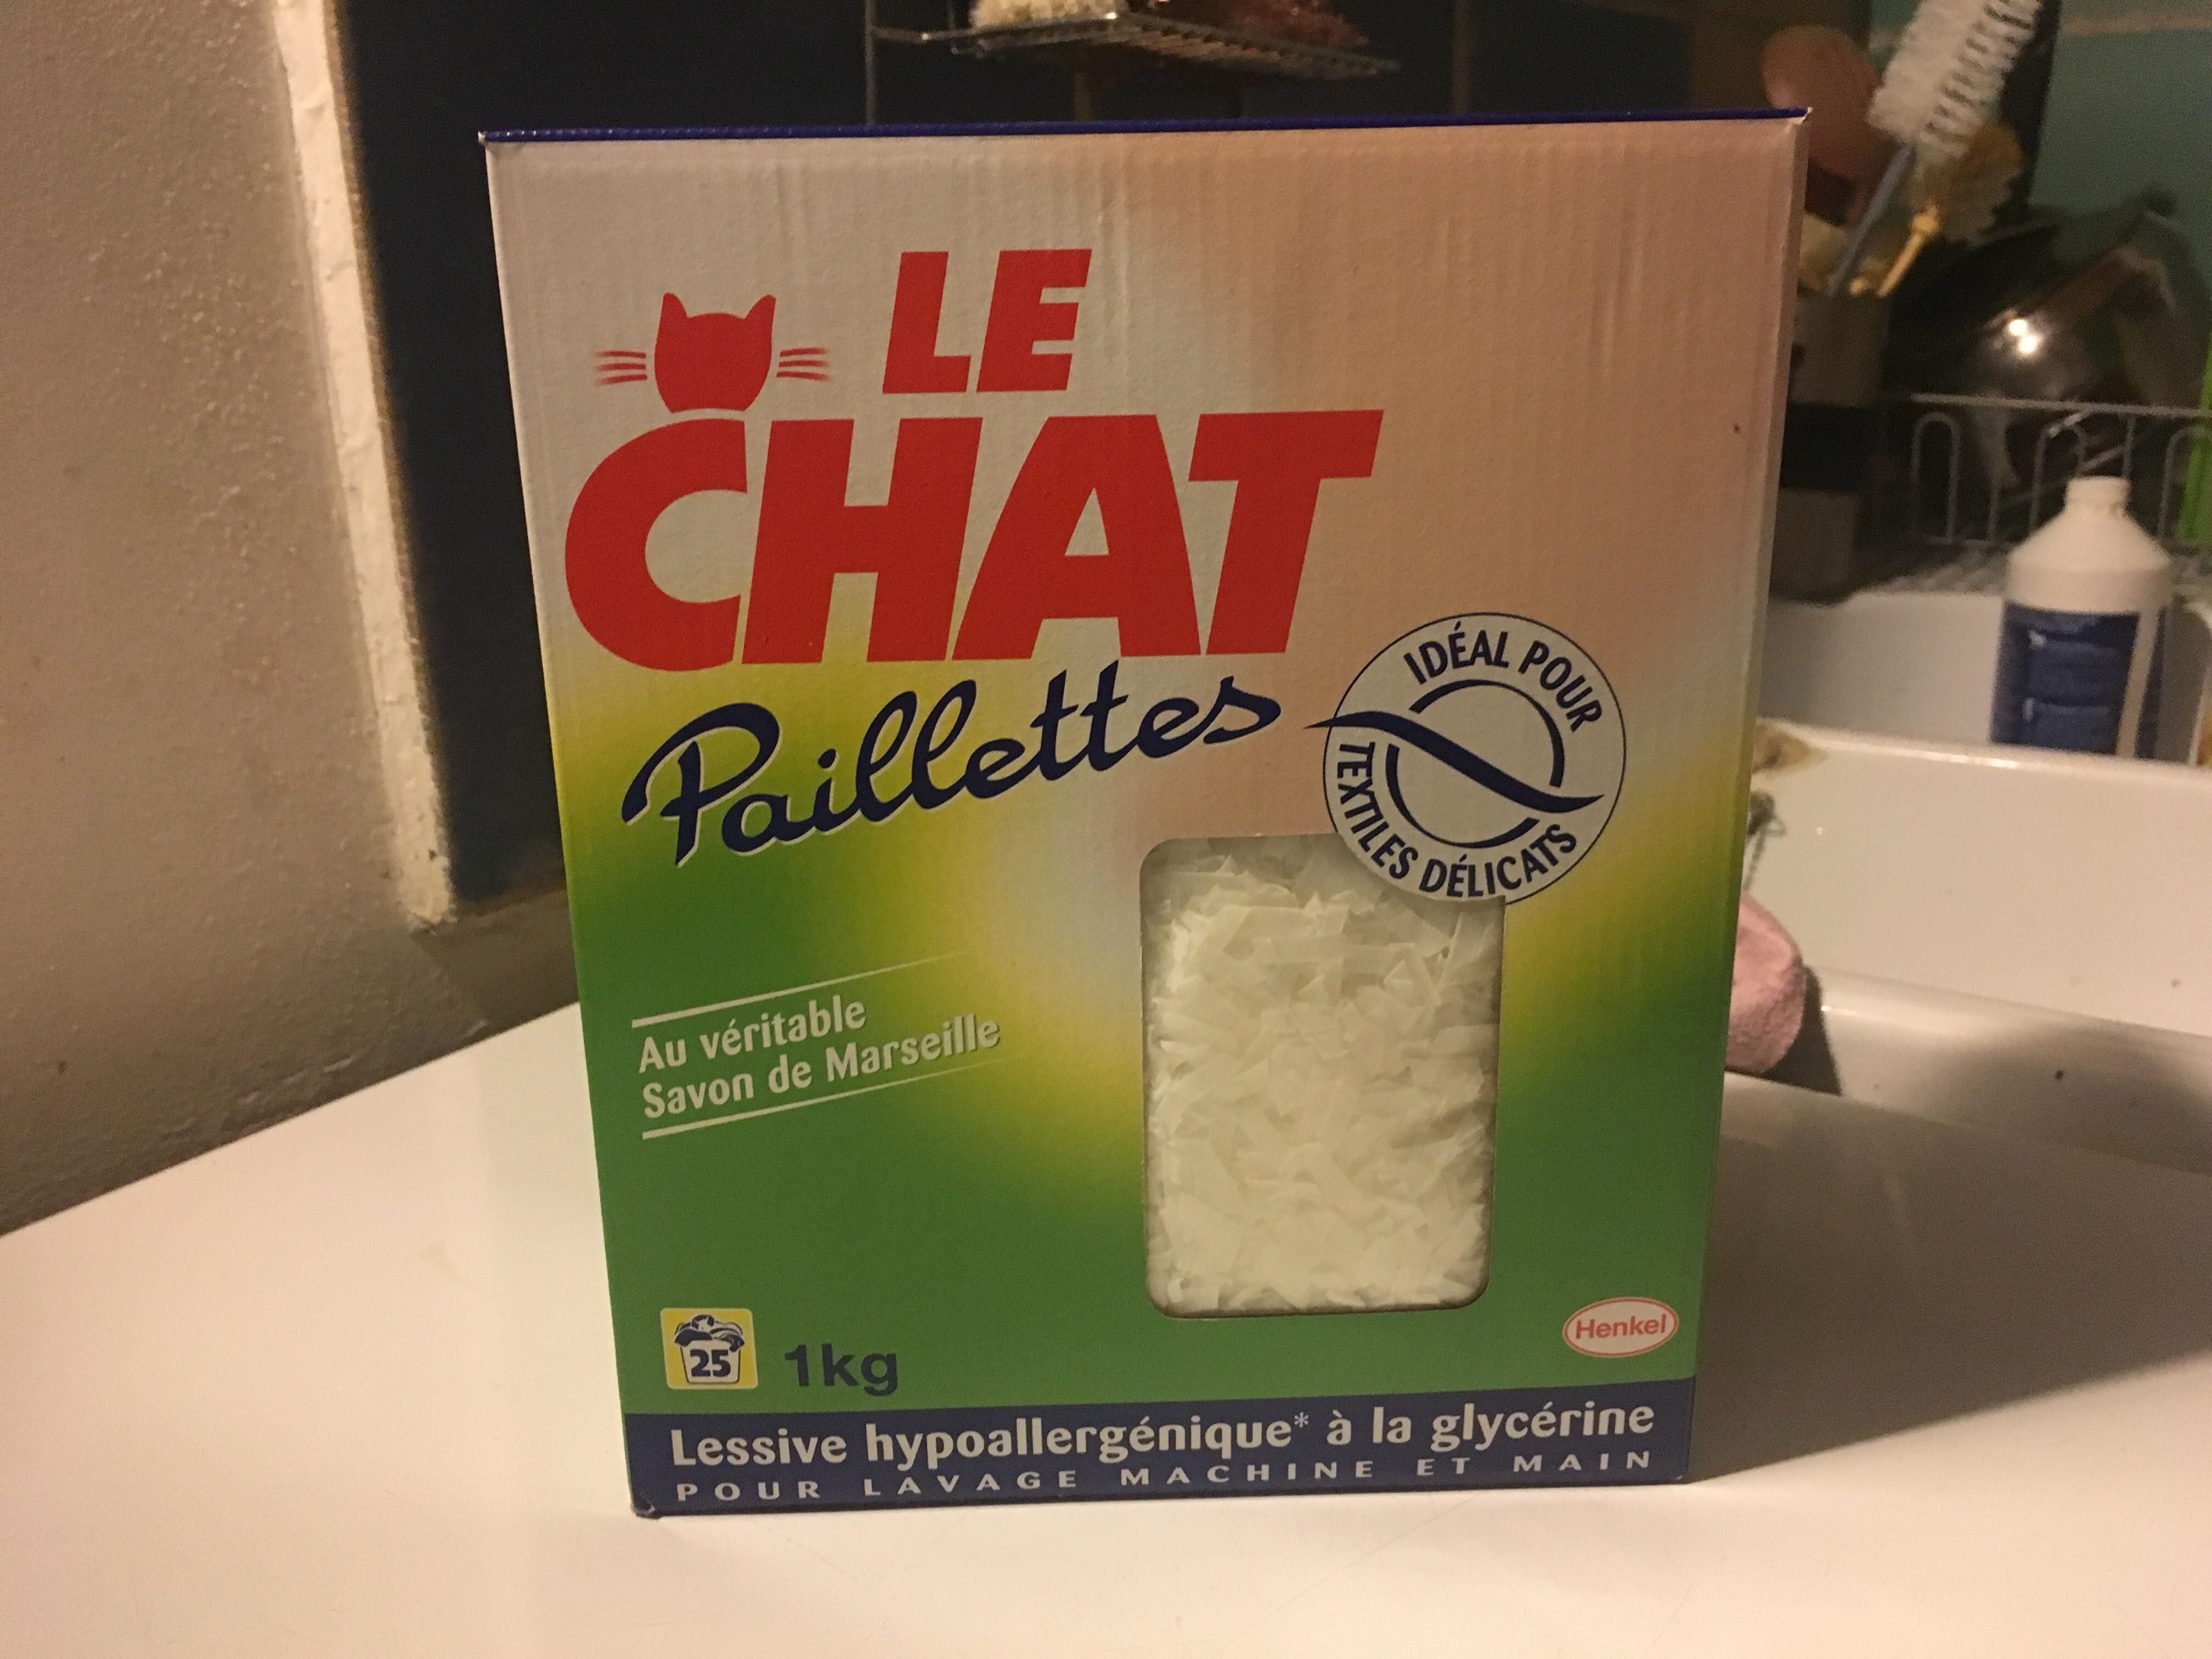 Paillettes au véritable savon de Marseille - Product - fr